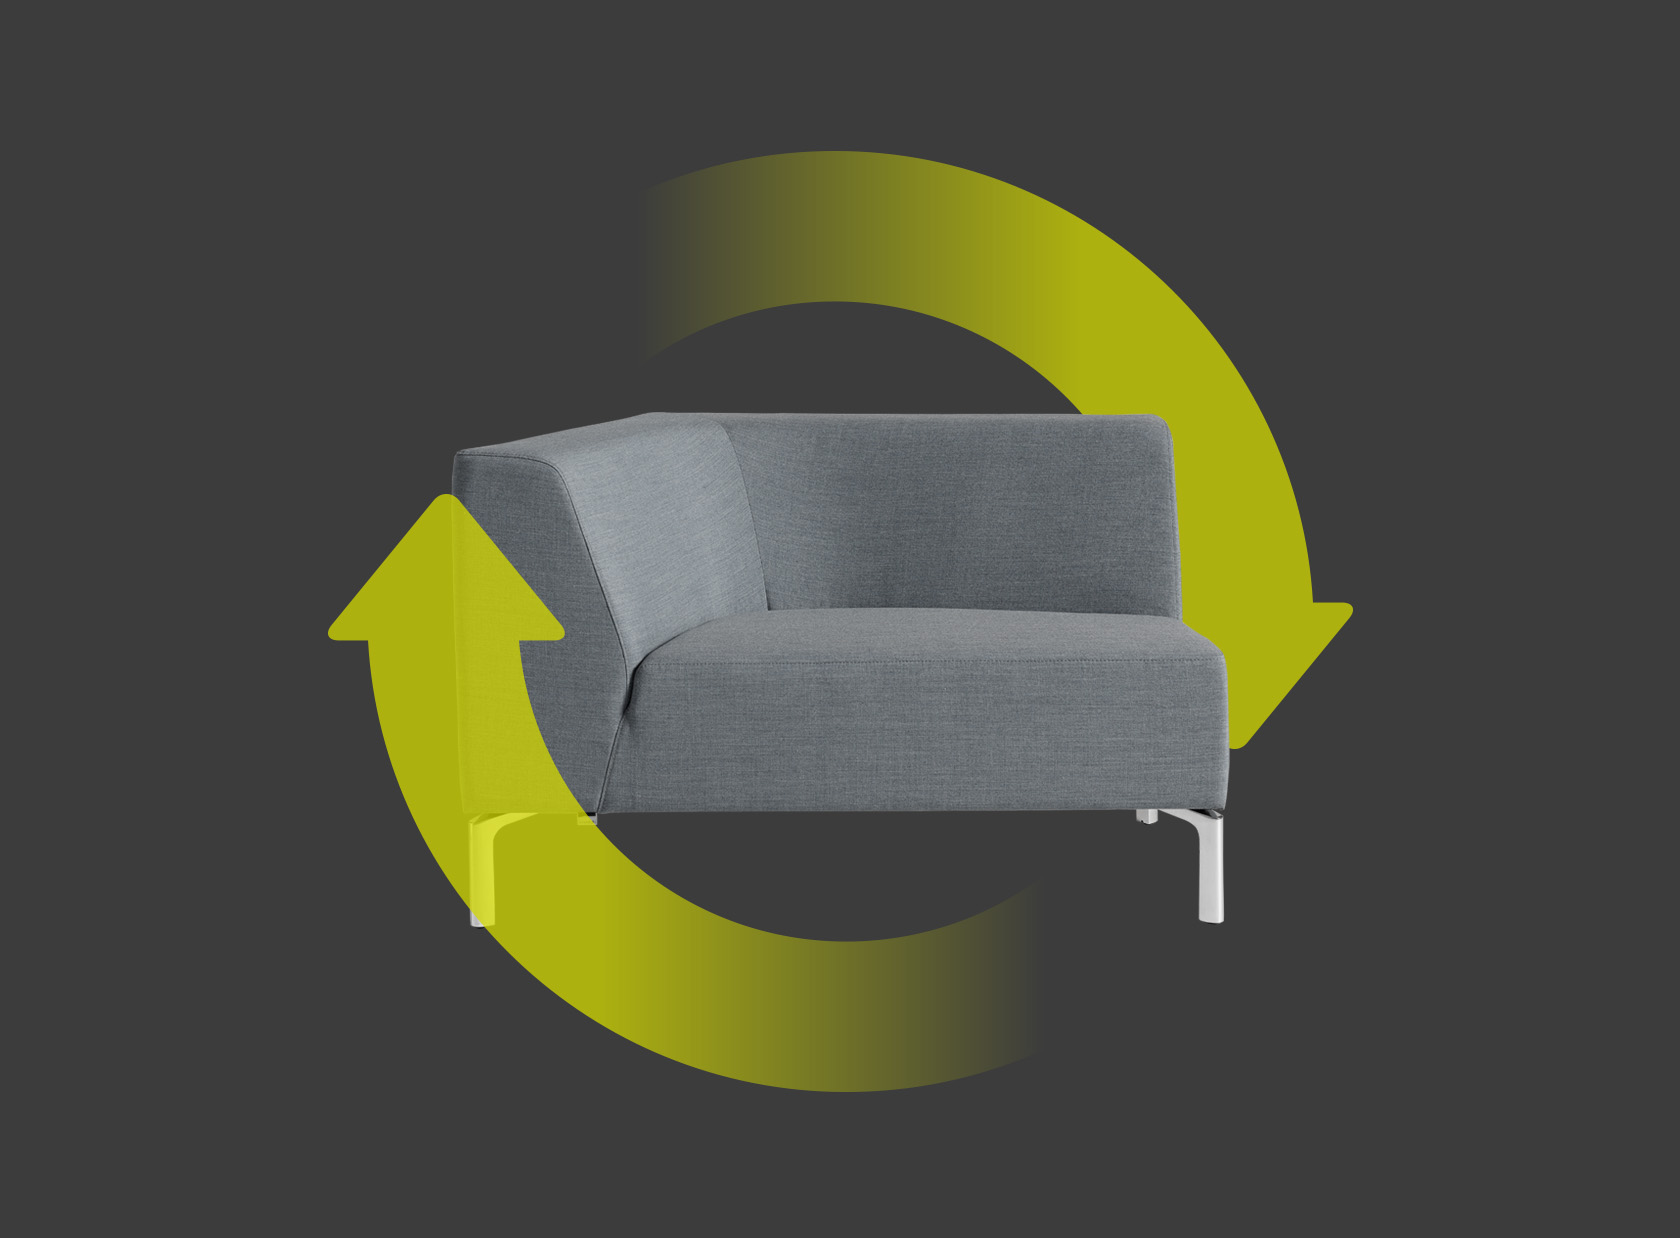 Tangram-zitelement rechts in het grijs met twee groenen pijlen die een cirkel om het zitelement vormen. Deze geven de duurzaamheid en herbruikbaarheid van de stoel aan.